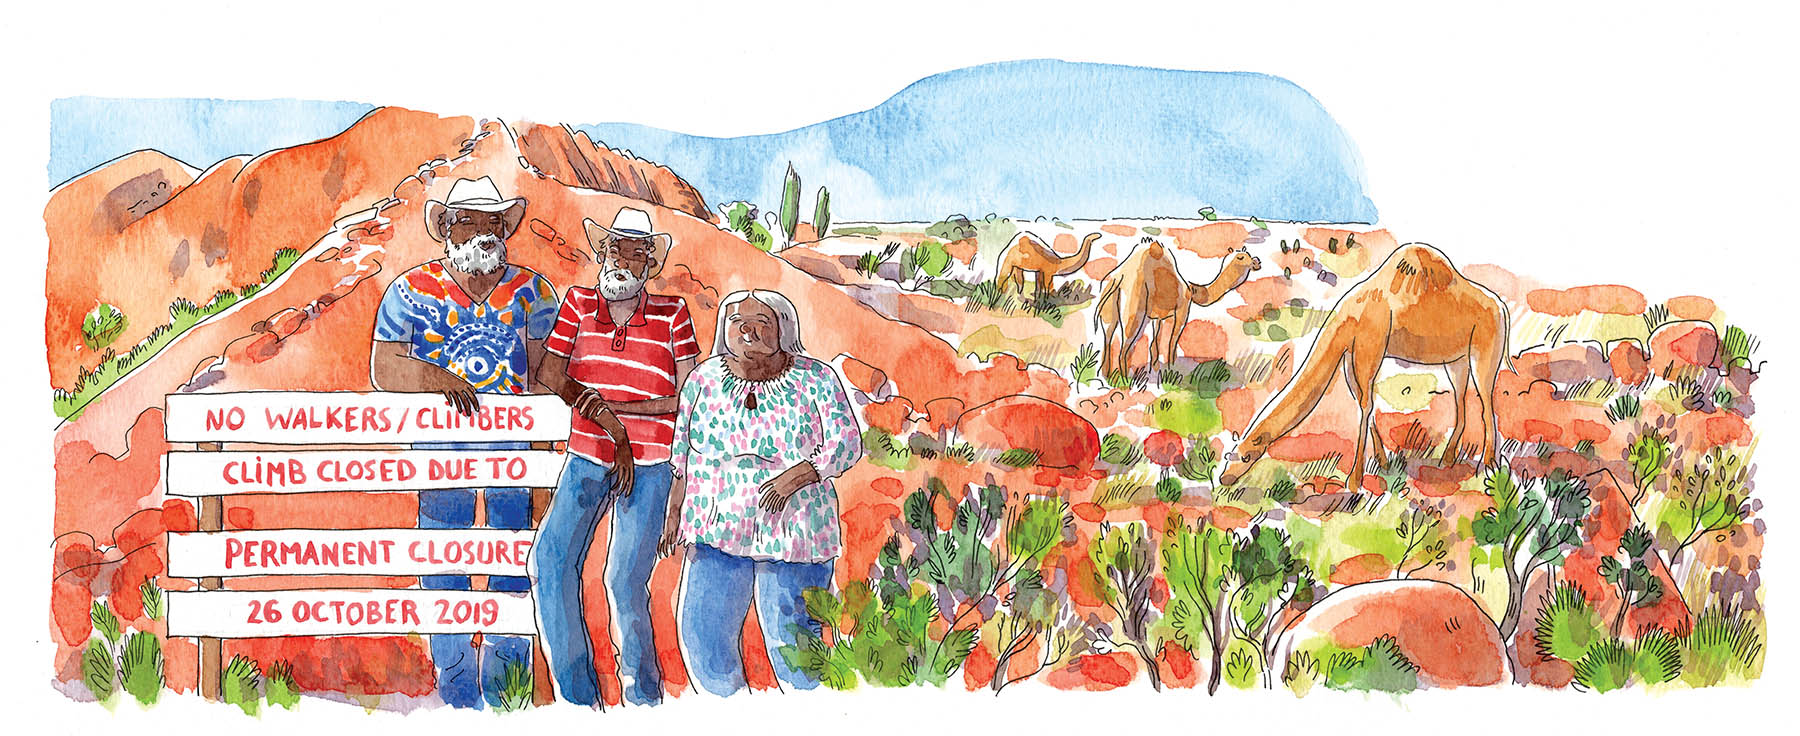 dessin à l'aquarelle issu d'un carnet de voyage en Australie représentant deux hommes et une femme aborigènes accoudées à la pancarte annonçant la fermeture définitive de l'escalade du rocher. Le rocher Uluru, rouge, en arrière plan ainsi que des dromadaires.